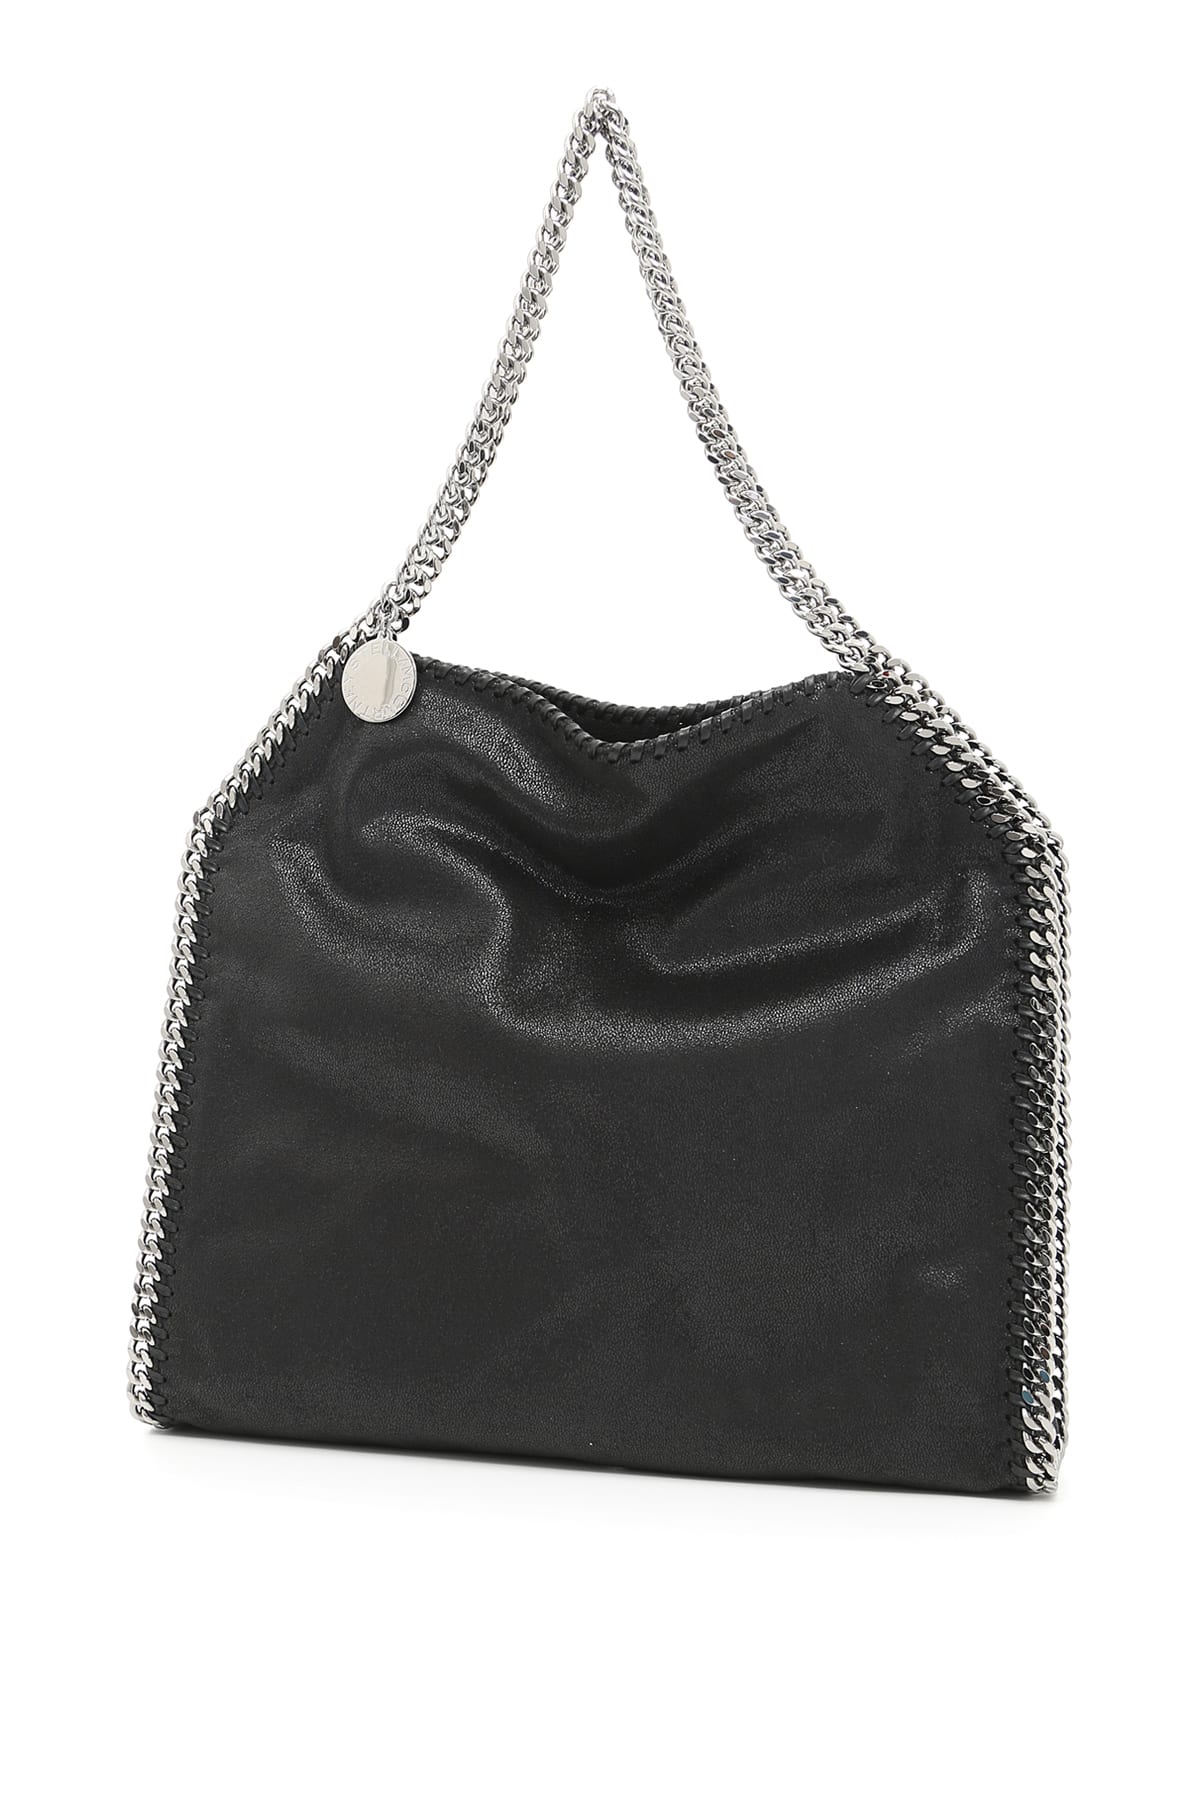 Stella Mccartney Small Falabella Tote Bag In Black (black)